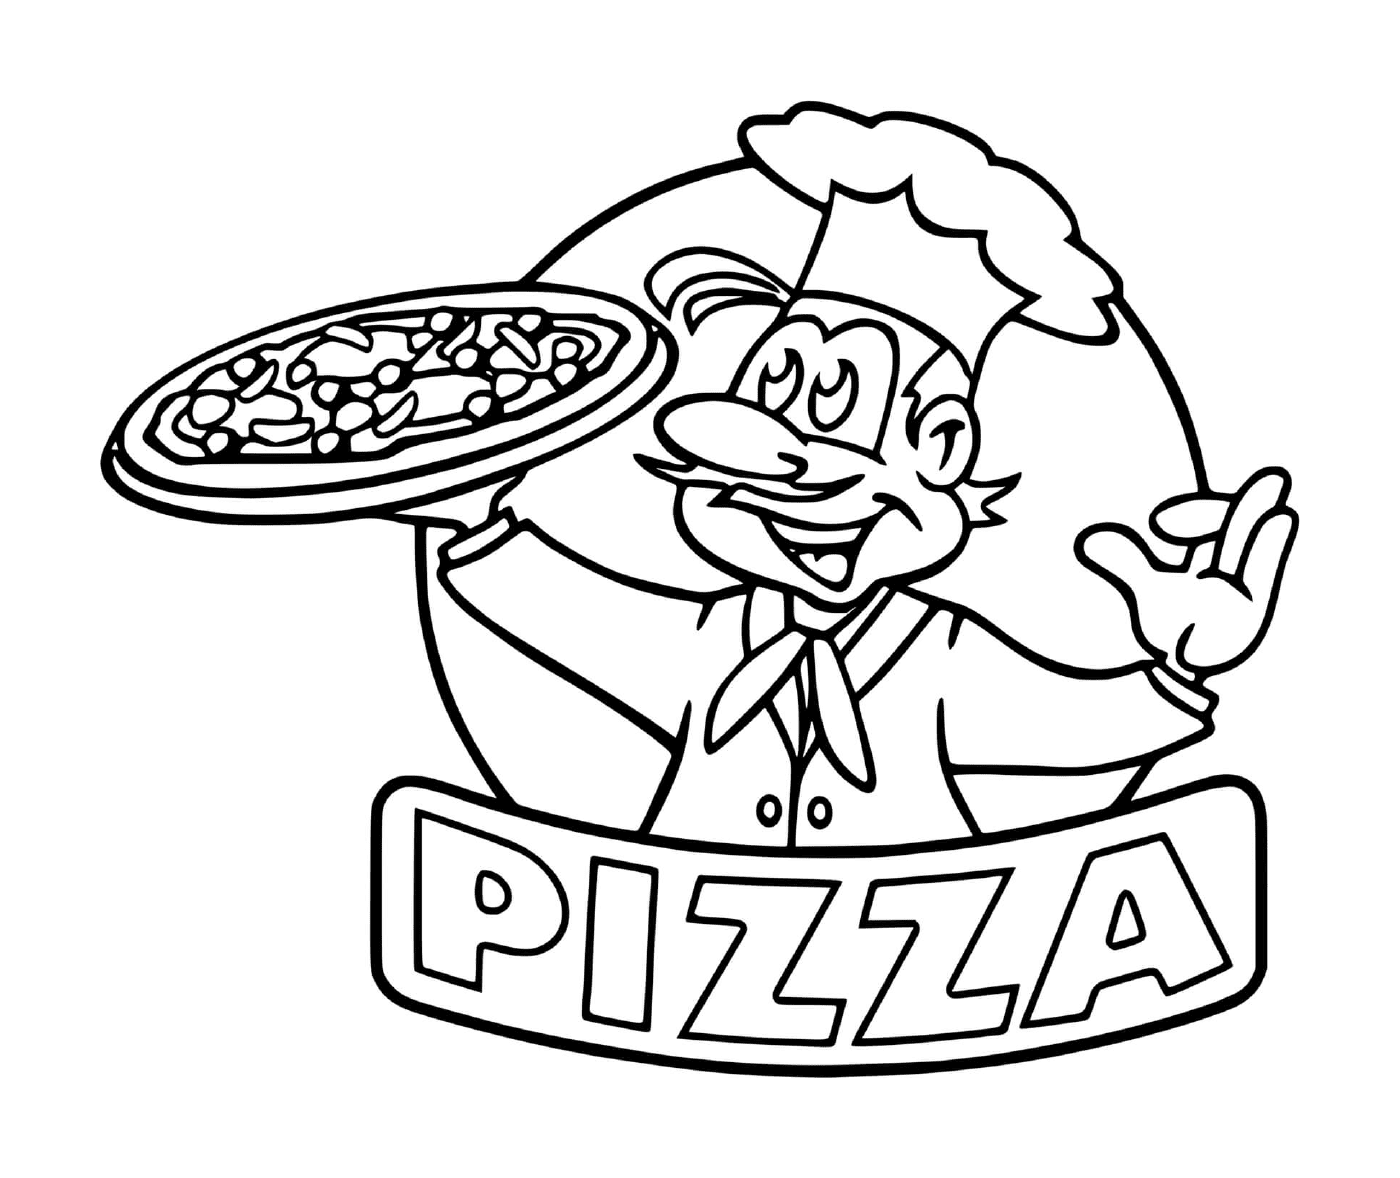  El logotipo del chef del restaurante de pizza 